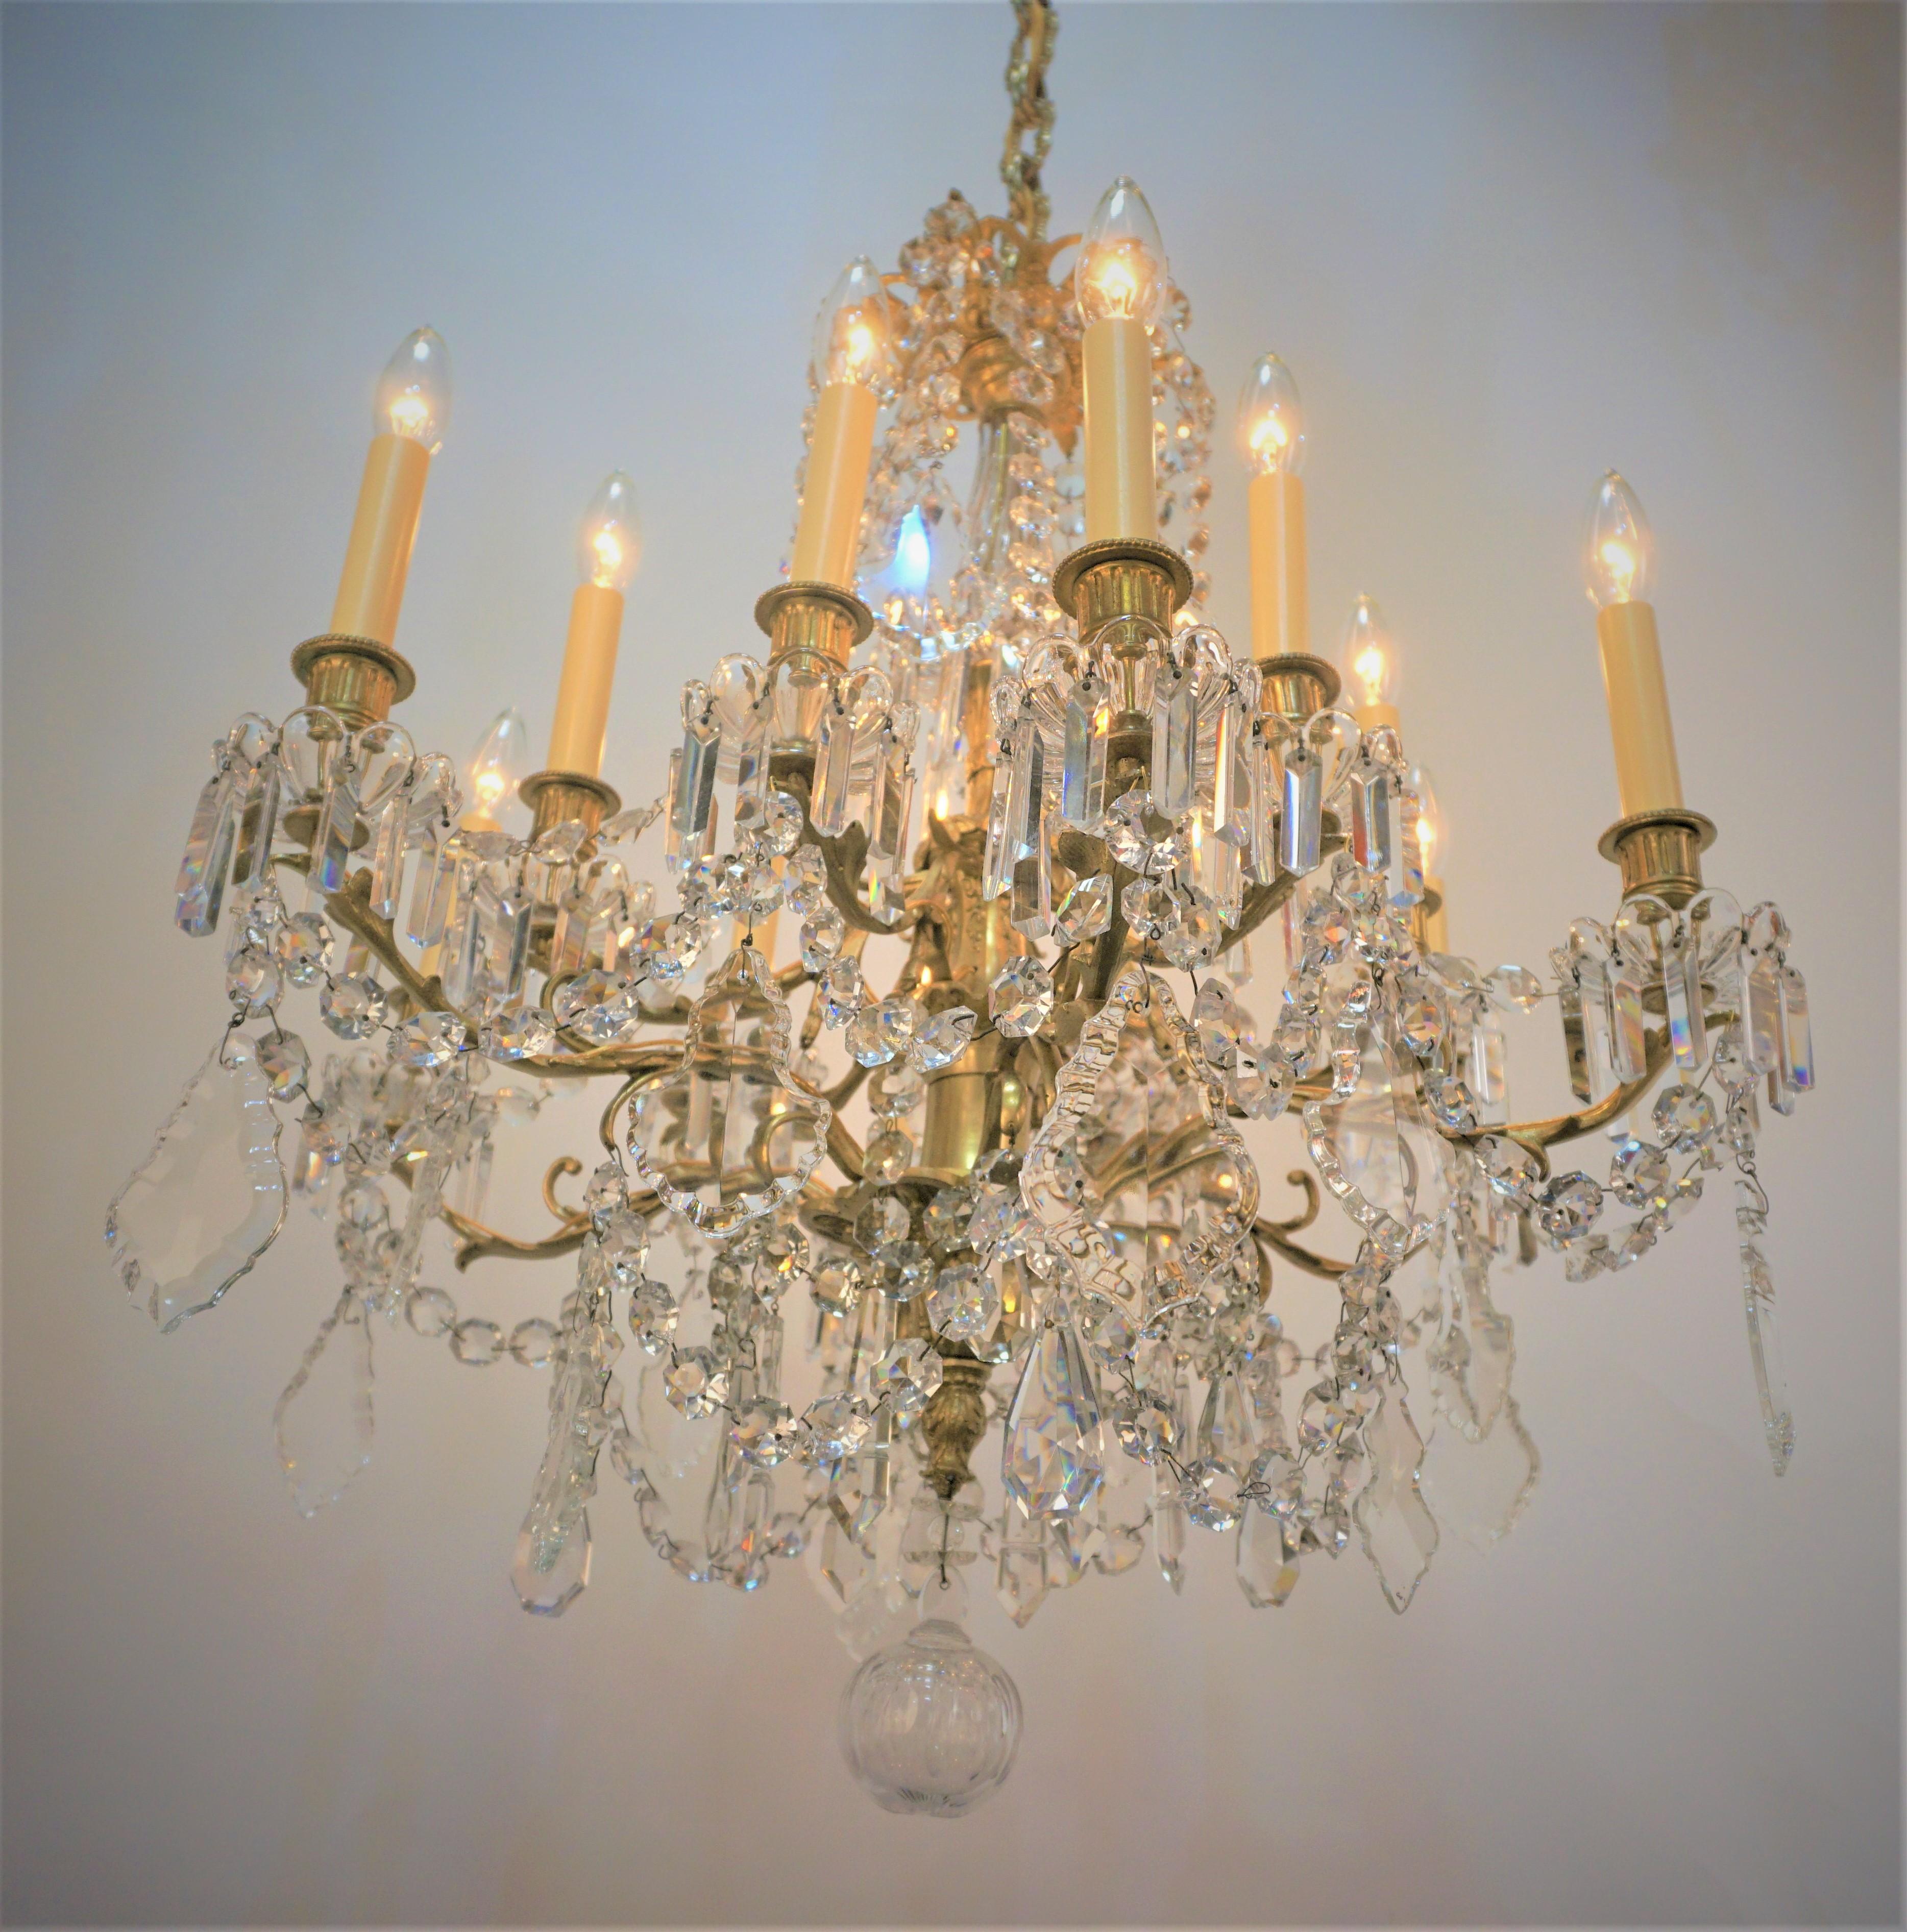 Eleganter Baccarat-Kronleuchter mit zwölf Lichtern aus dem 19. Jahrhundert in Kristall und Bronze.
Professionell elektrifiziert und einbaufertig.
Abmessung